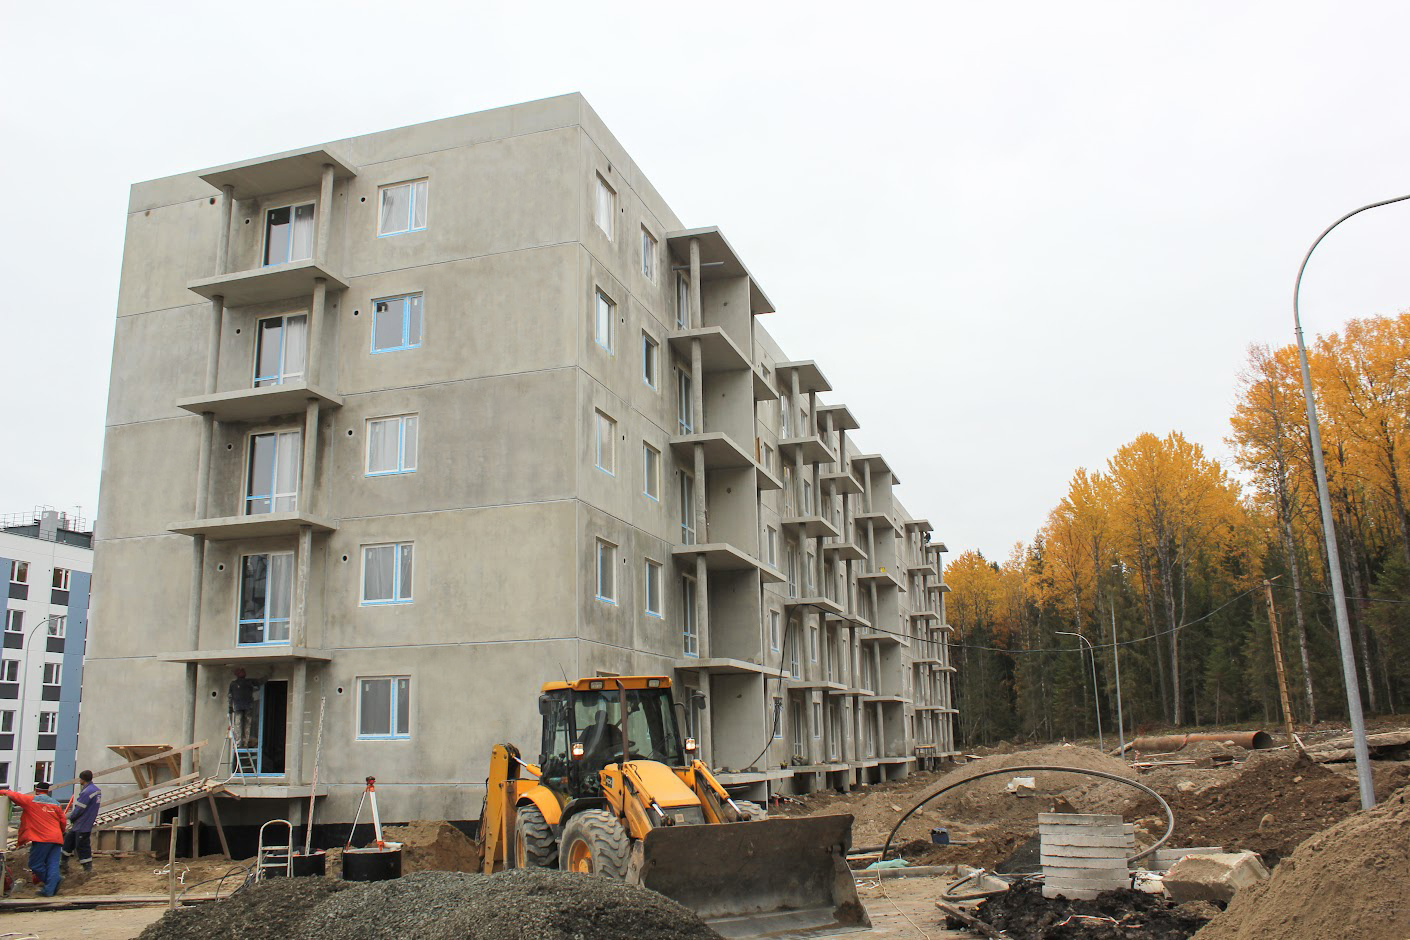 Многоквартирный жилой дом №42 в микрорайоне №7 жилого района «Древлянка-II» в г. Петрозаводске отгружен